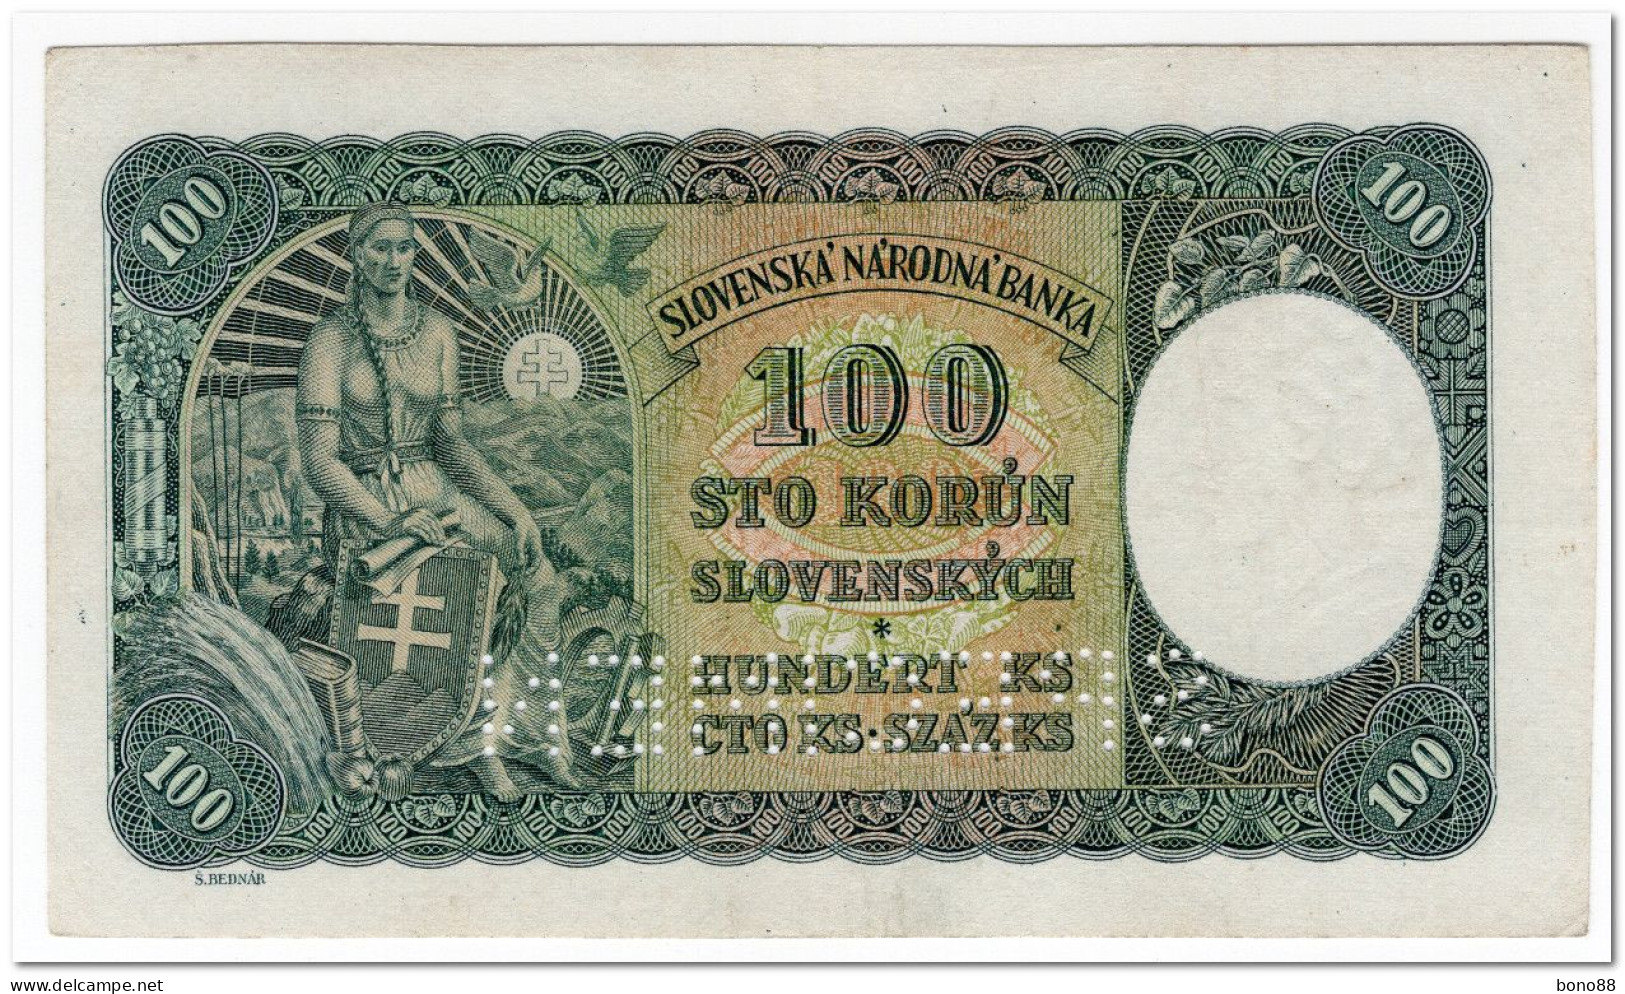 SLOVAKIA,100 KORUN,1940,P.10,AU,SPECIMEN,PERFORATED - Eslovaquia